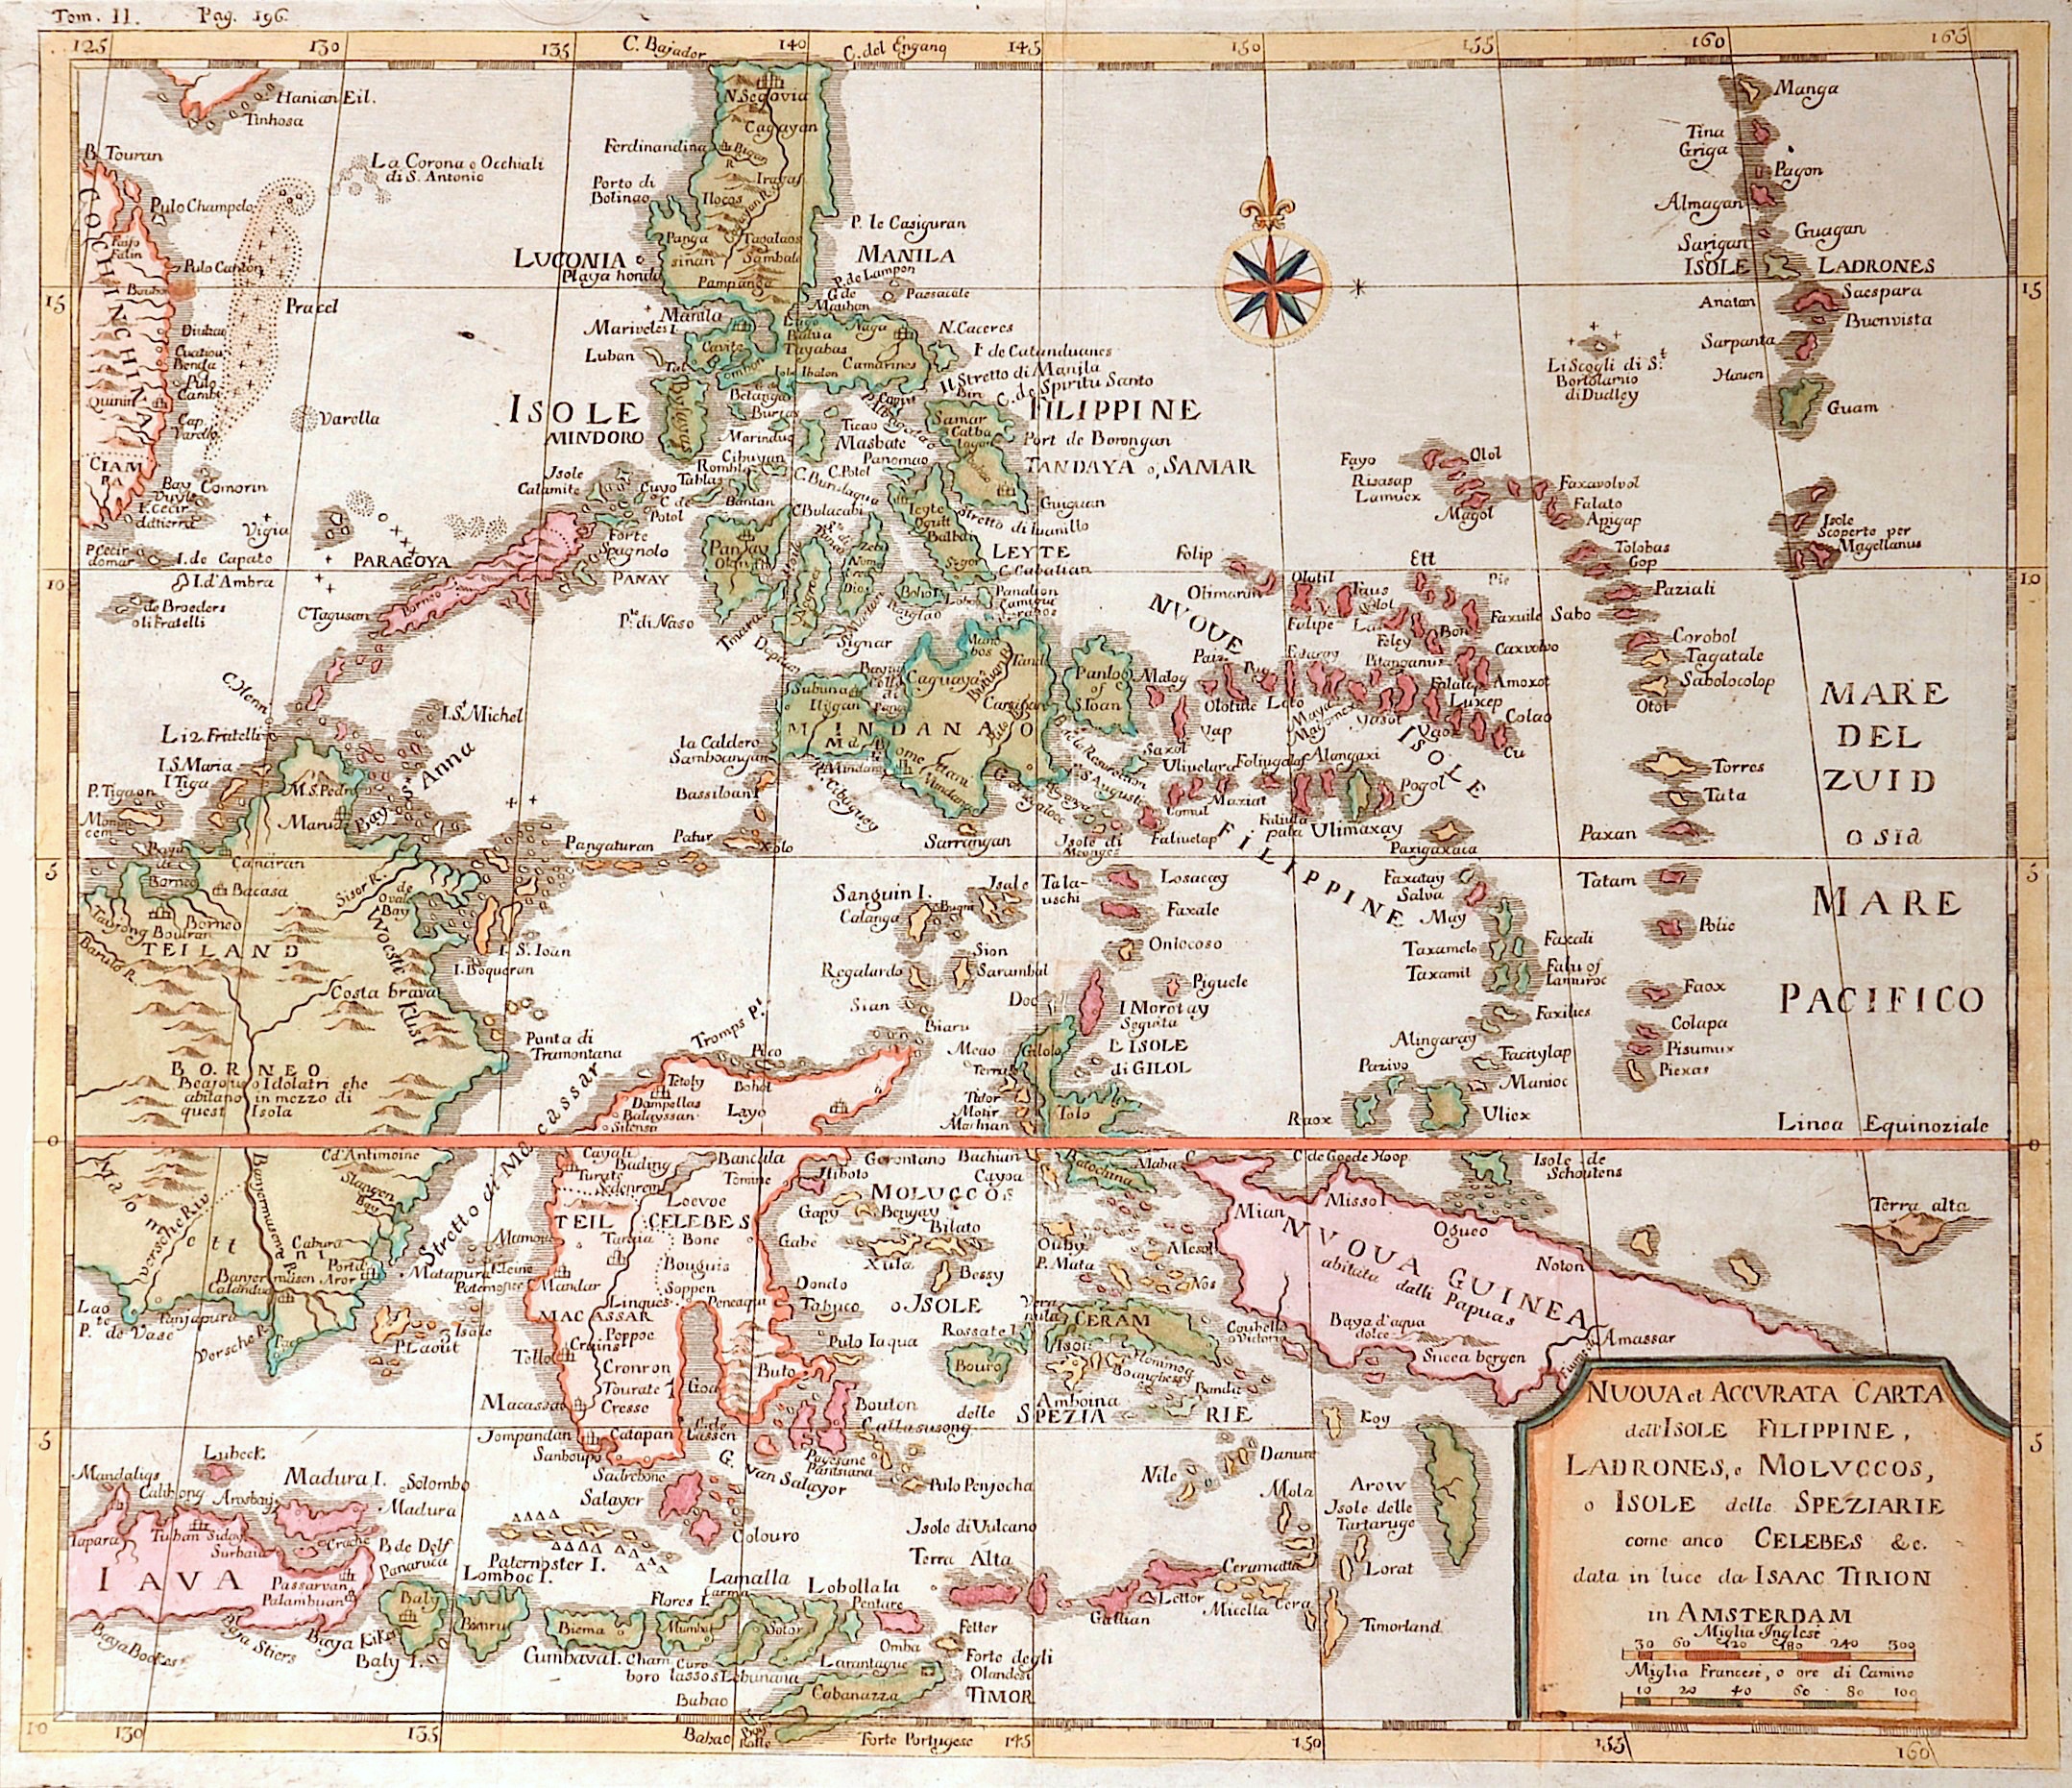 Tirion Isaak Nuova et accurata Carta dell‘ Isole Filippine, Ladrones e Moluccos…